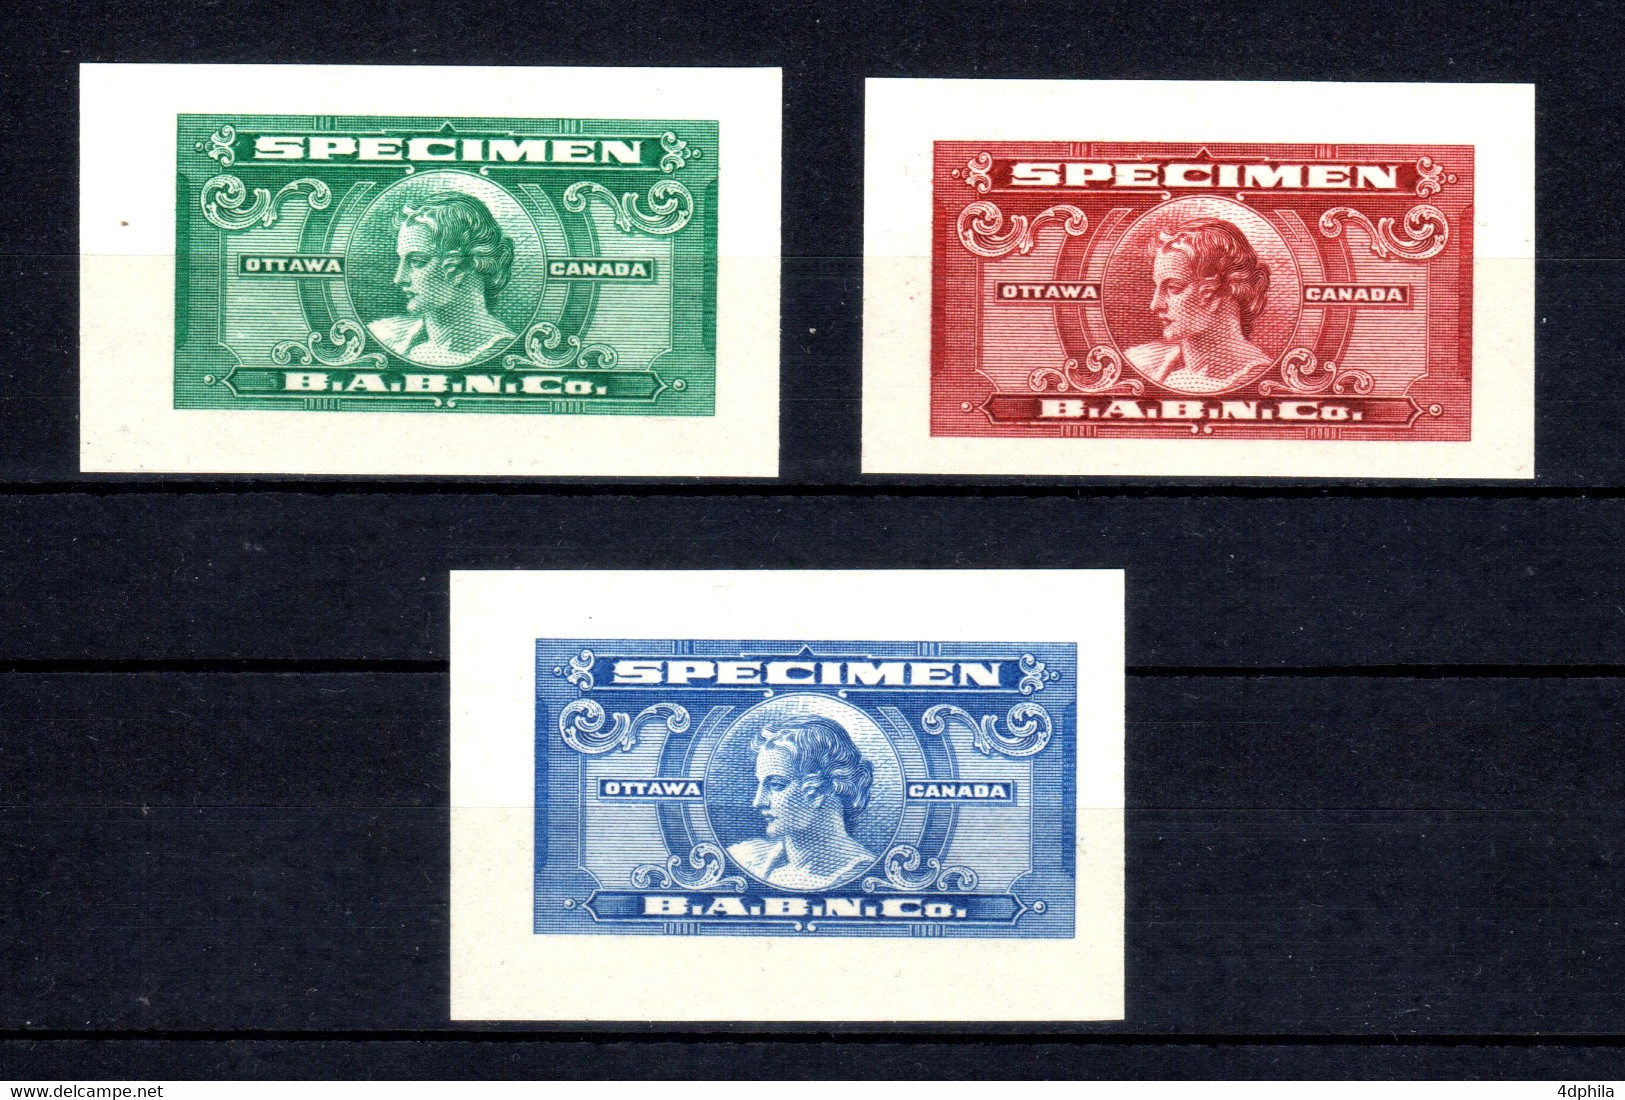 CANADA - 1935 - RARE 3 Dummy Stamps B.A.B.N.Co. - Specimen Essay Proof Trial Prueba Probedruck Test - Variedades Y Curiosidades